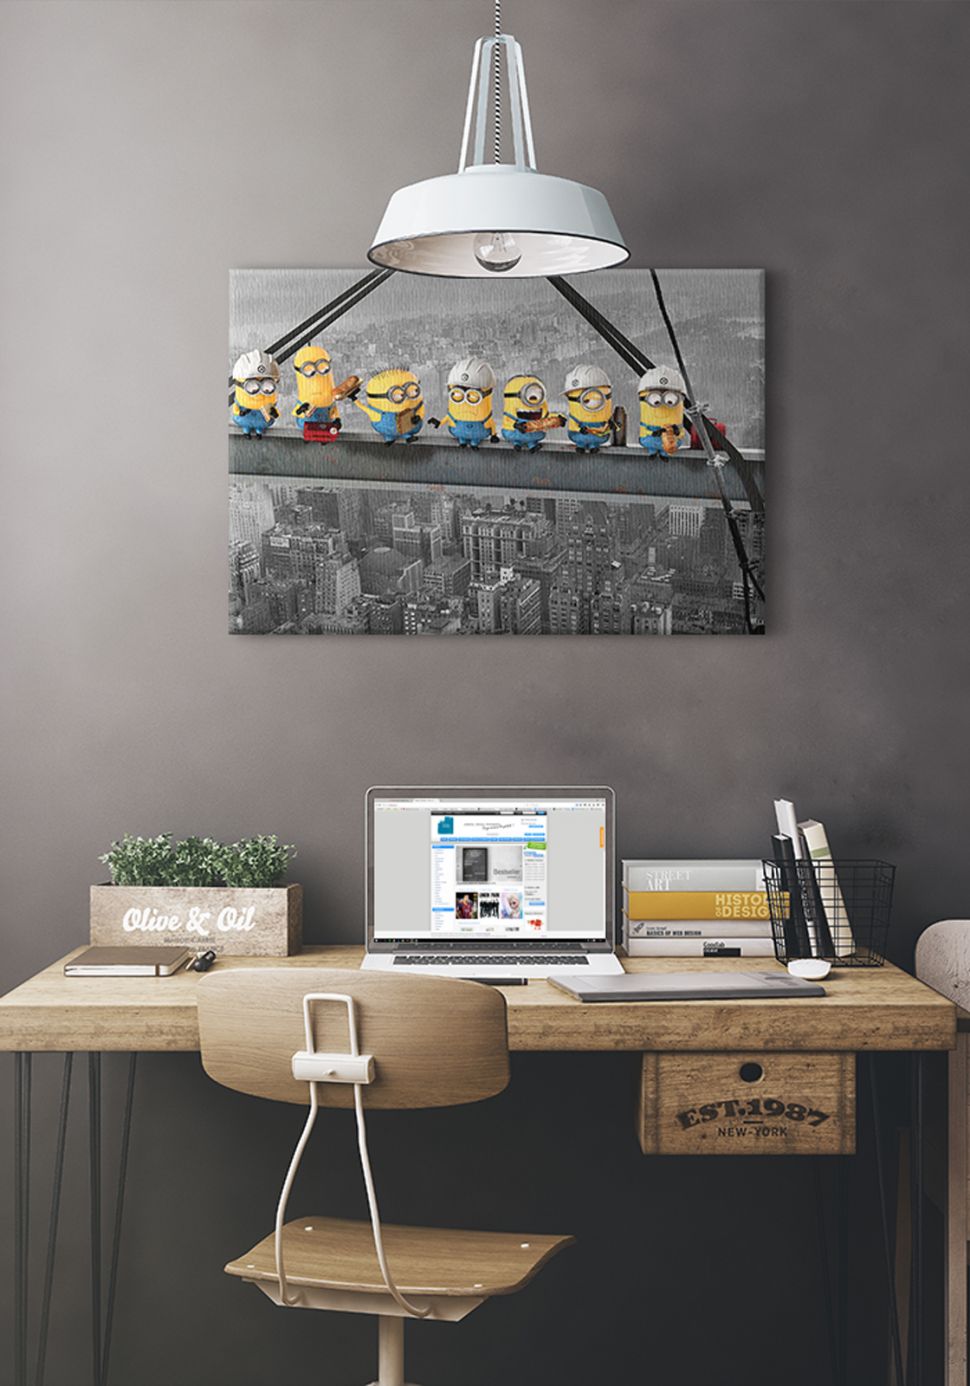 Aranżacja nowoczesnego biura z powieszonym na ścianie obrazem przedstawiającym Minionki na belce